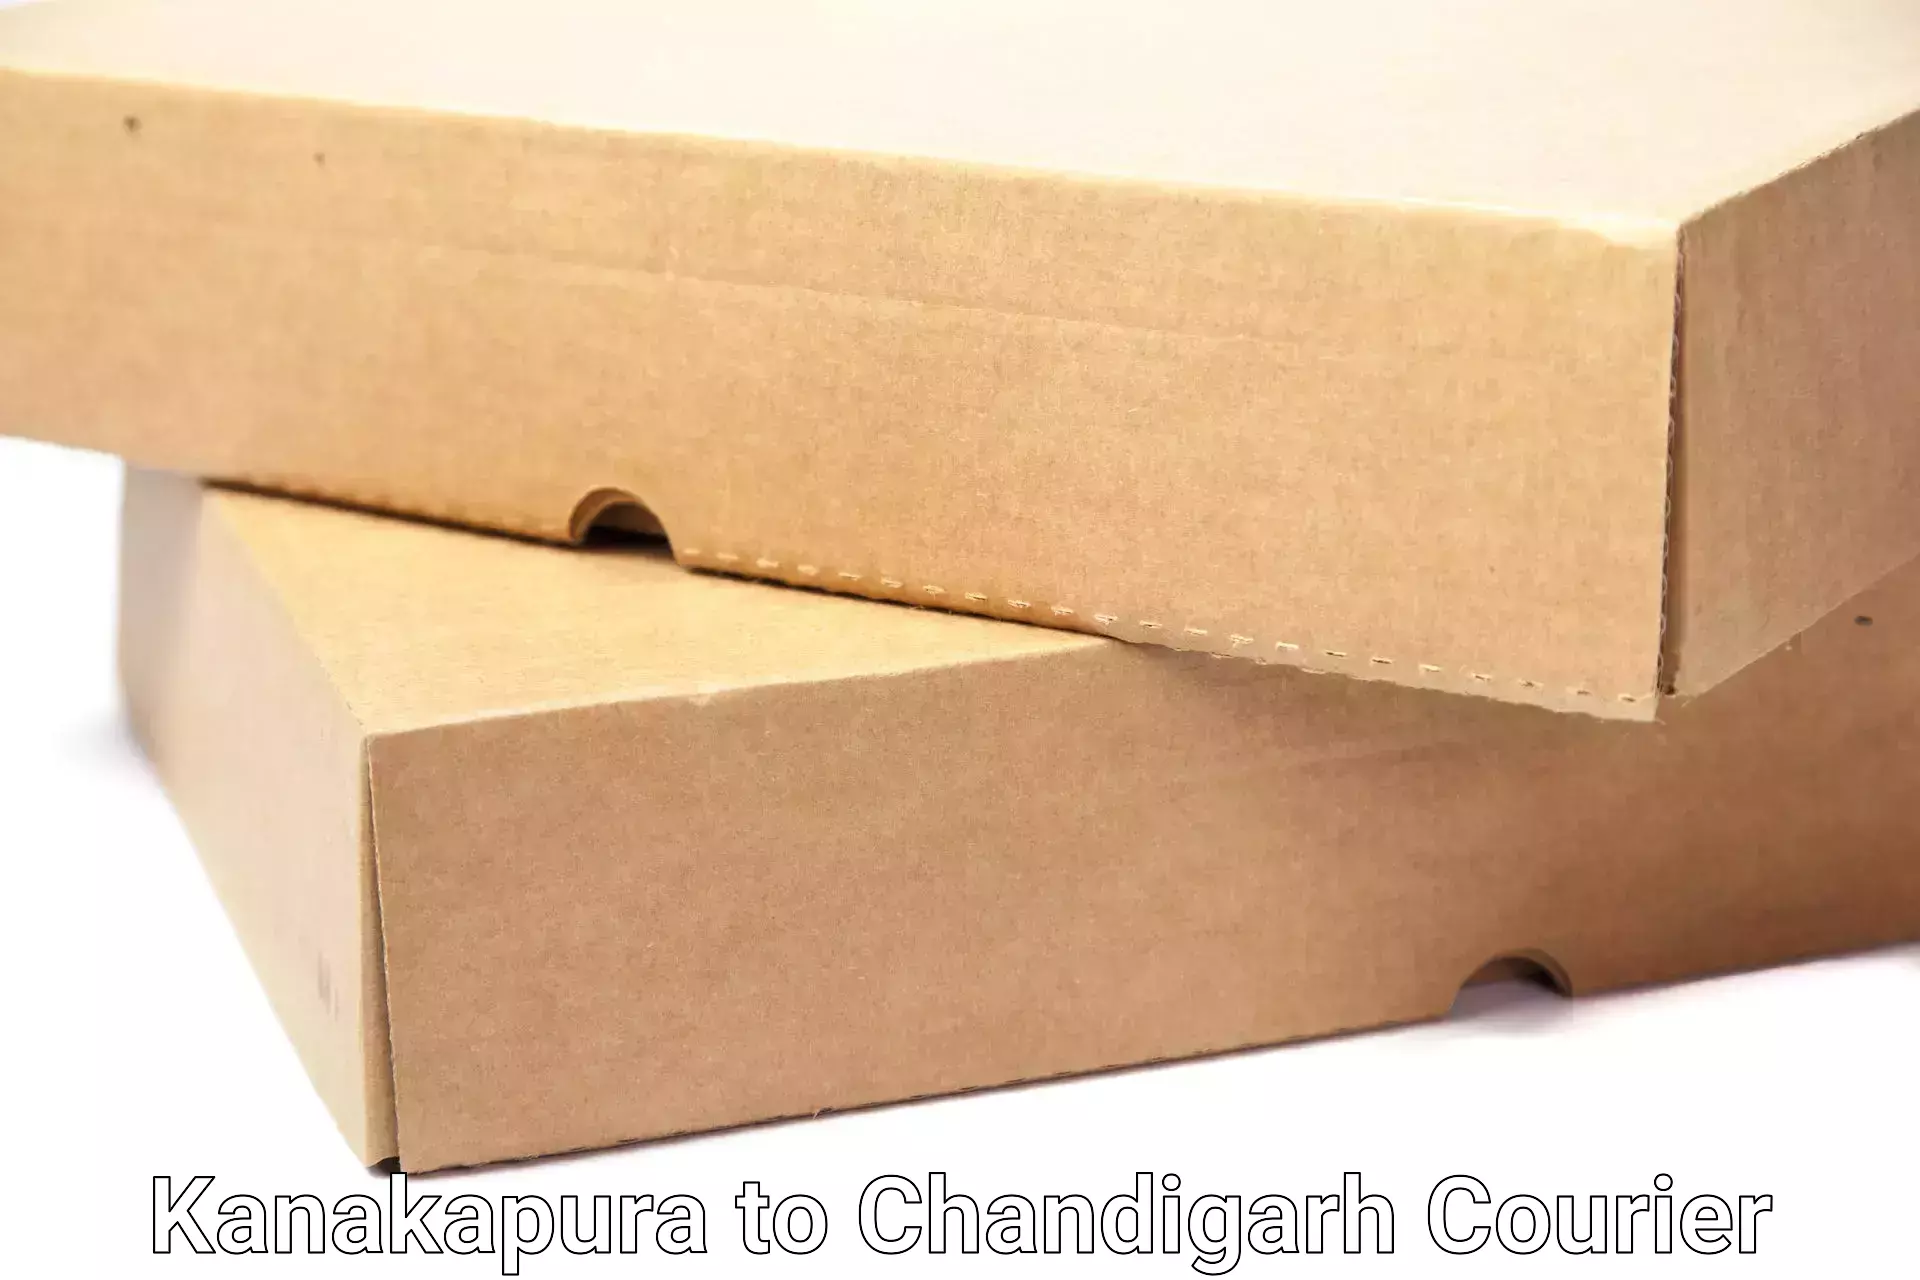 Professional goods transport Kanakapura to Chandigarh